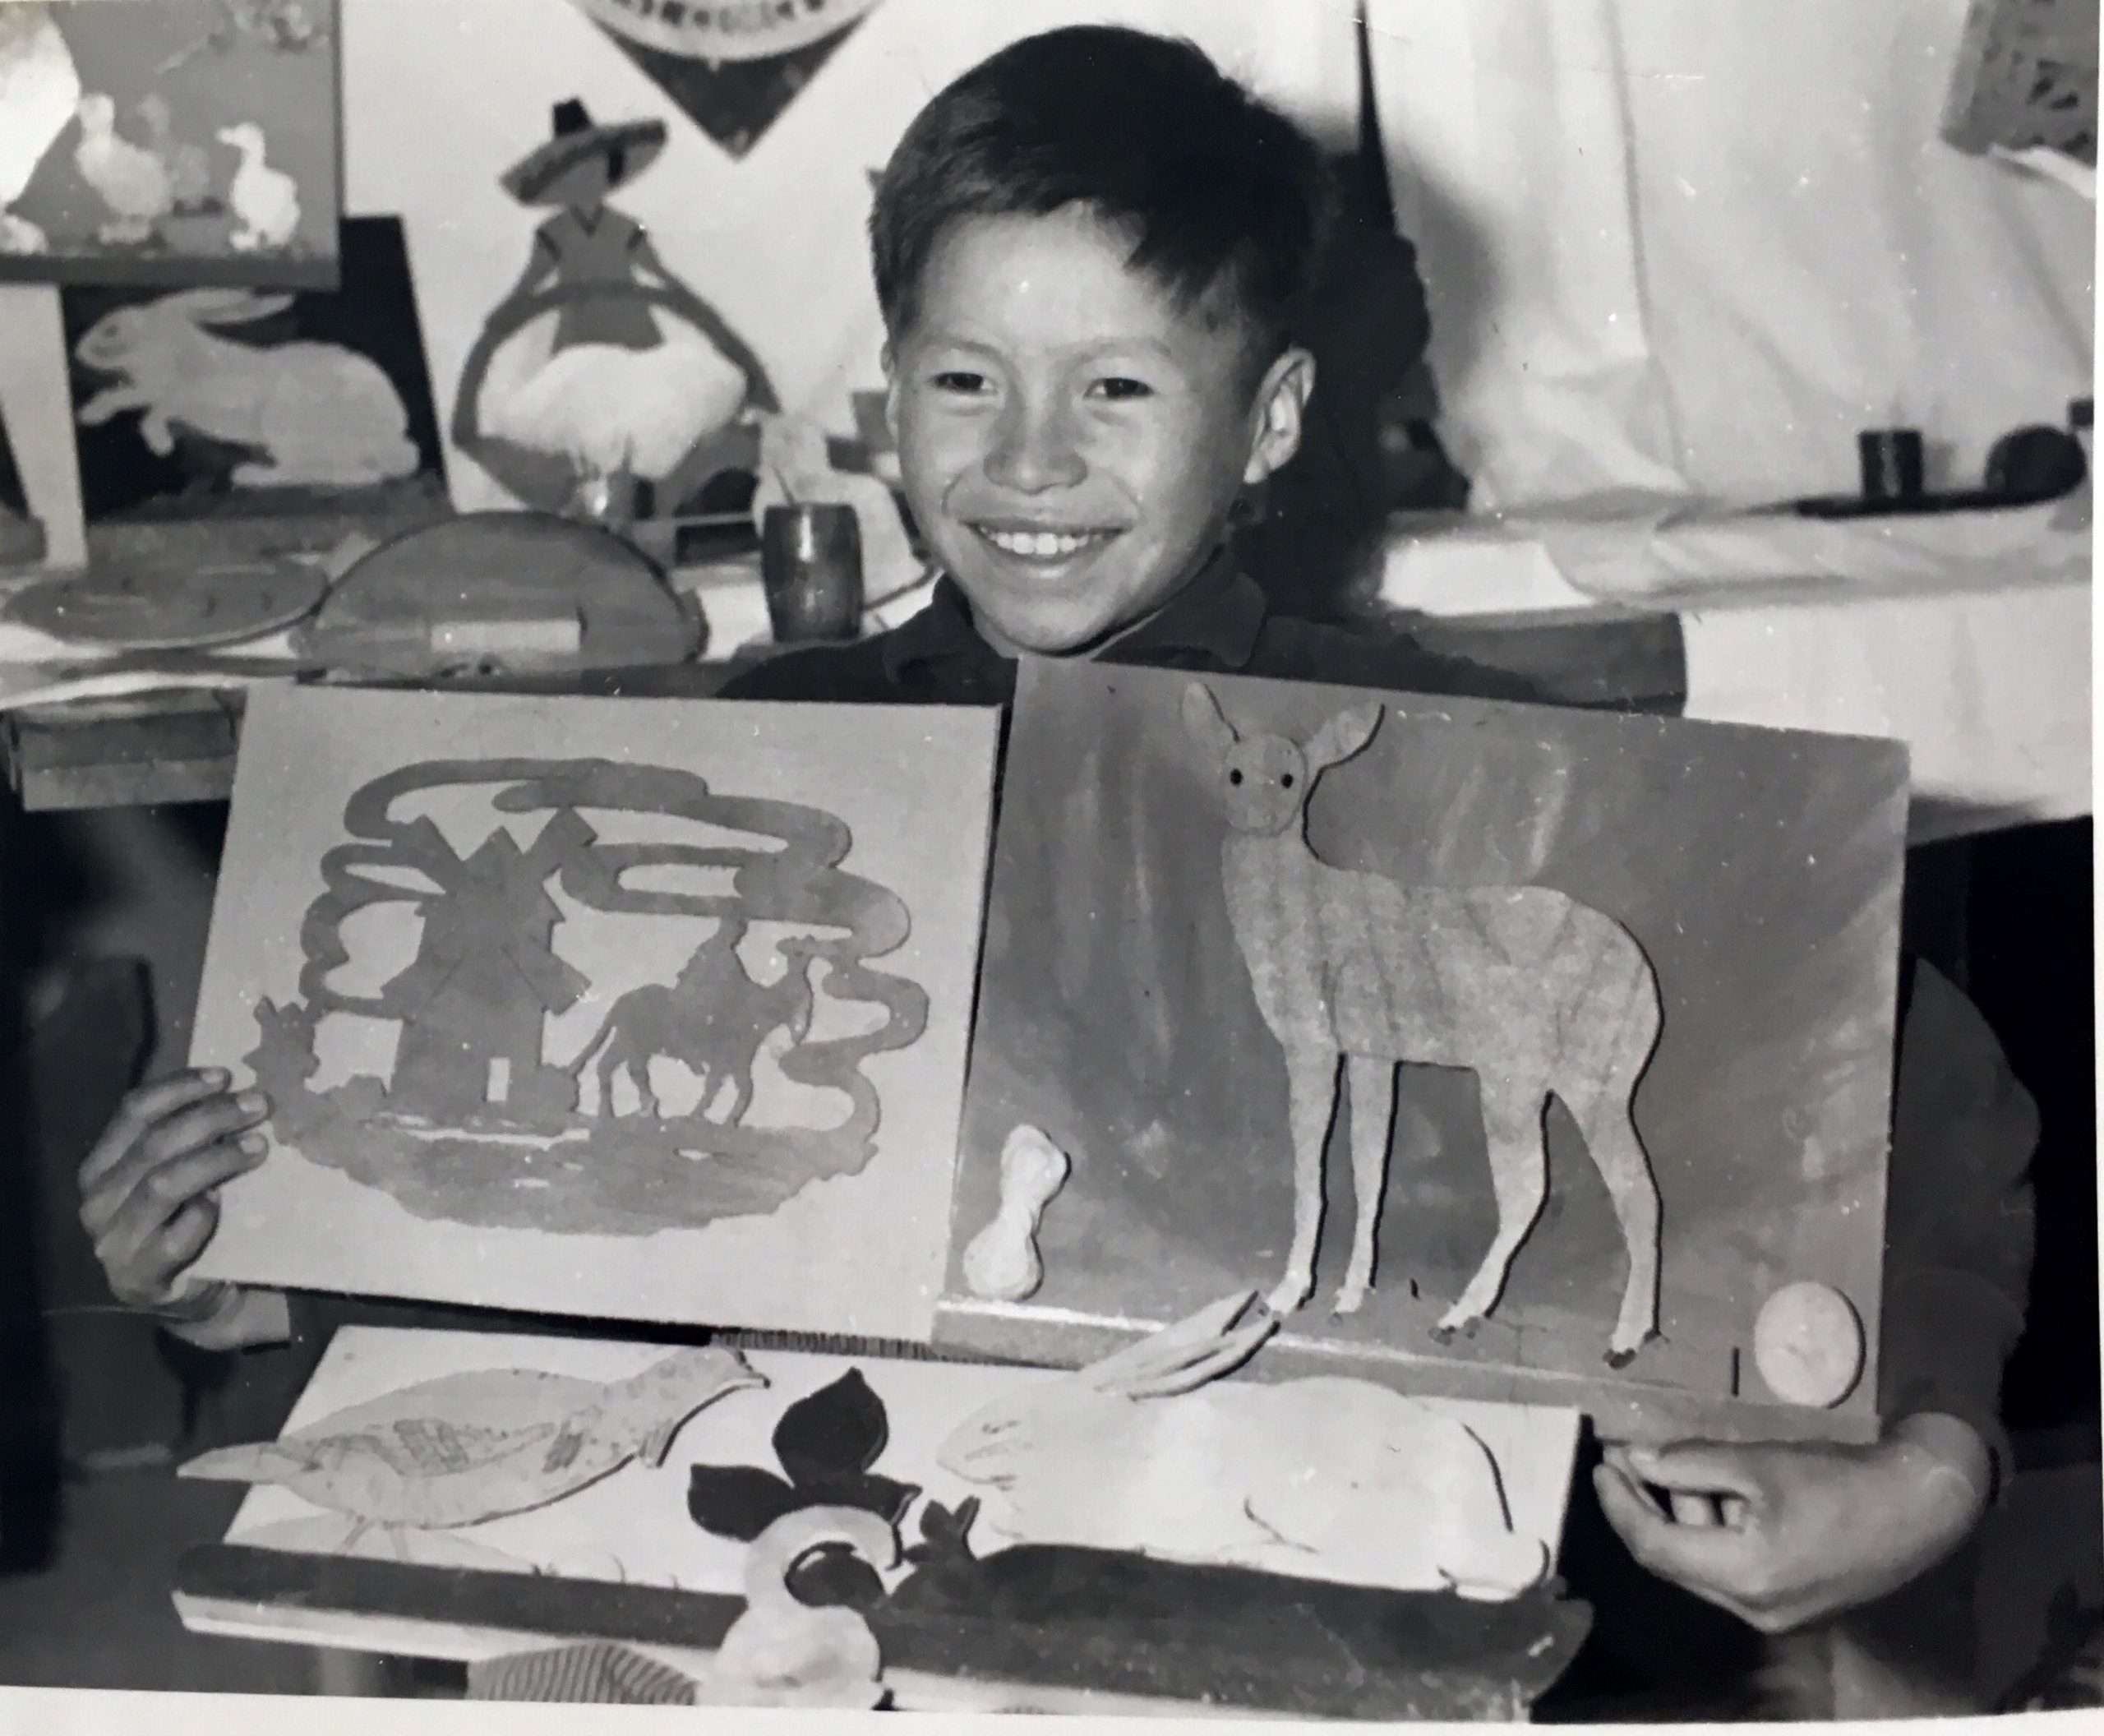 Jeune anicinabe présentant ses oeuvres d'arts au pensionnat d'Amos. Tout sourire, il montre ses gravures qui représentent des animaux notamment. Photo en noir et blanc.